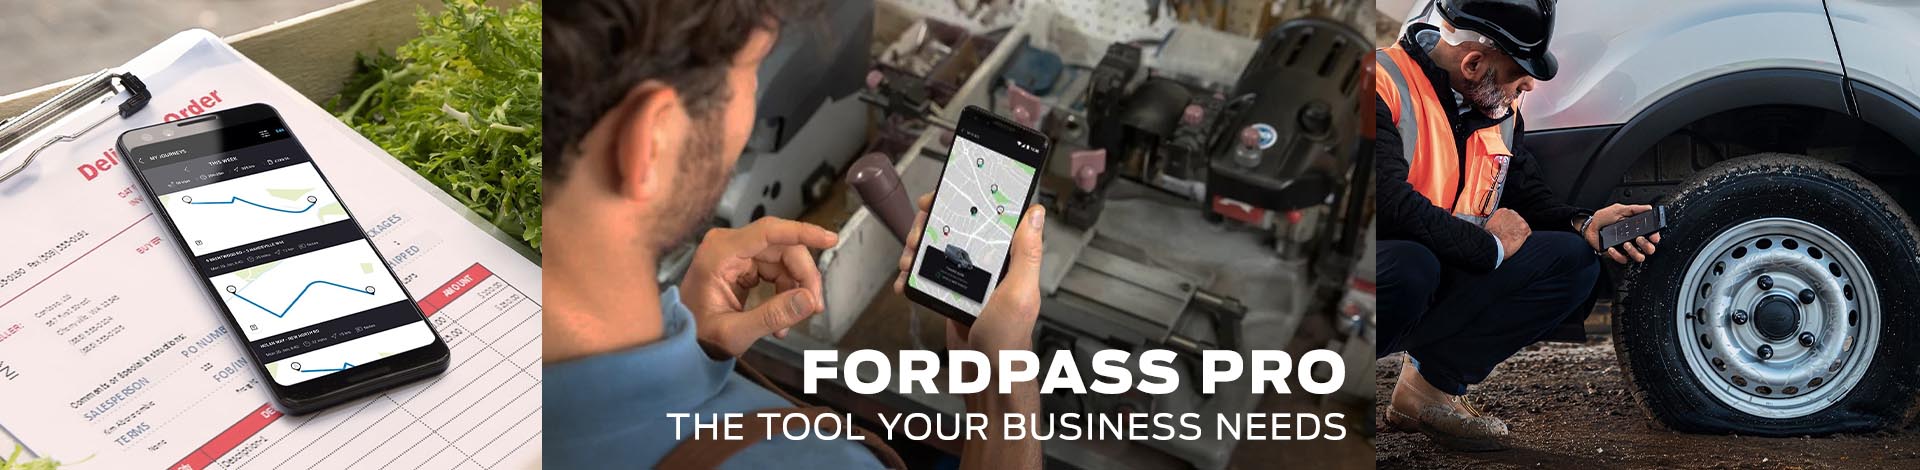 Fordpass Pro Page